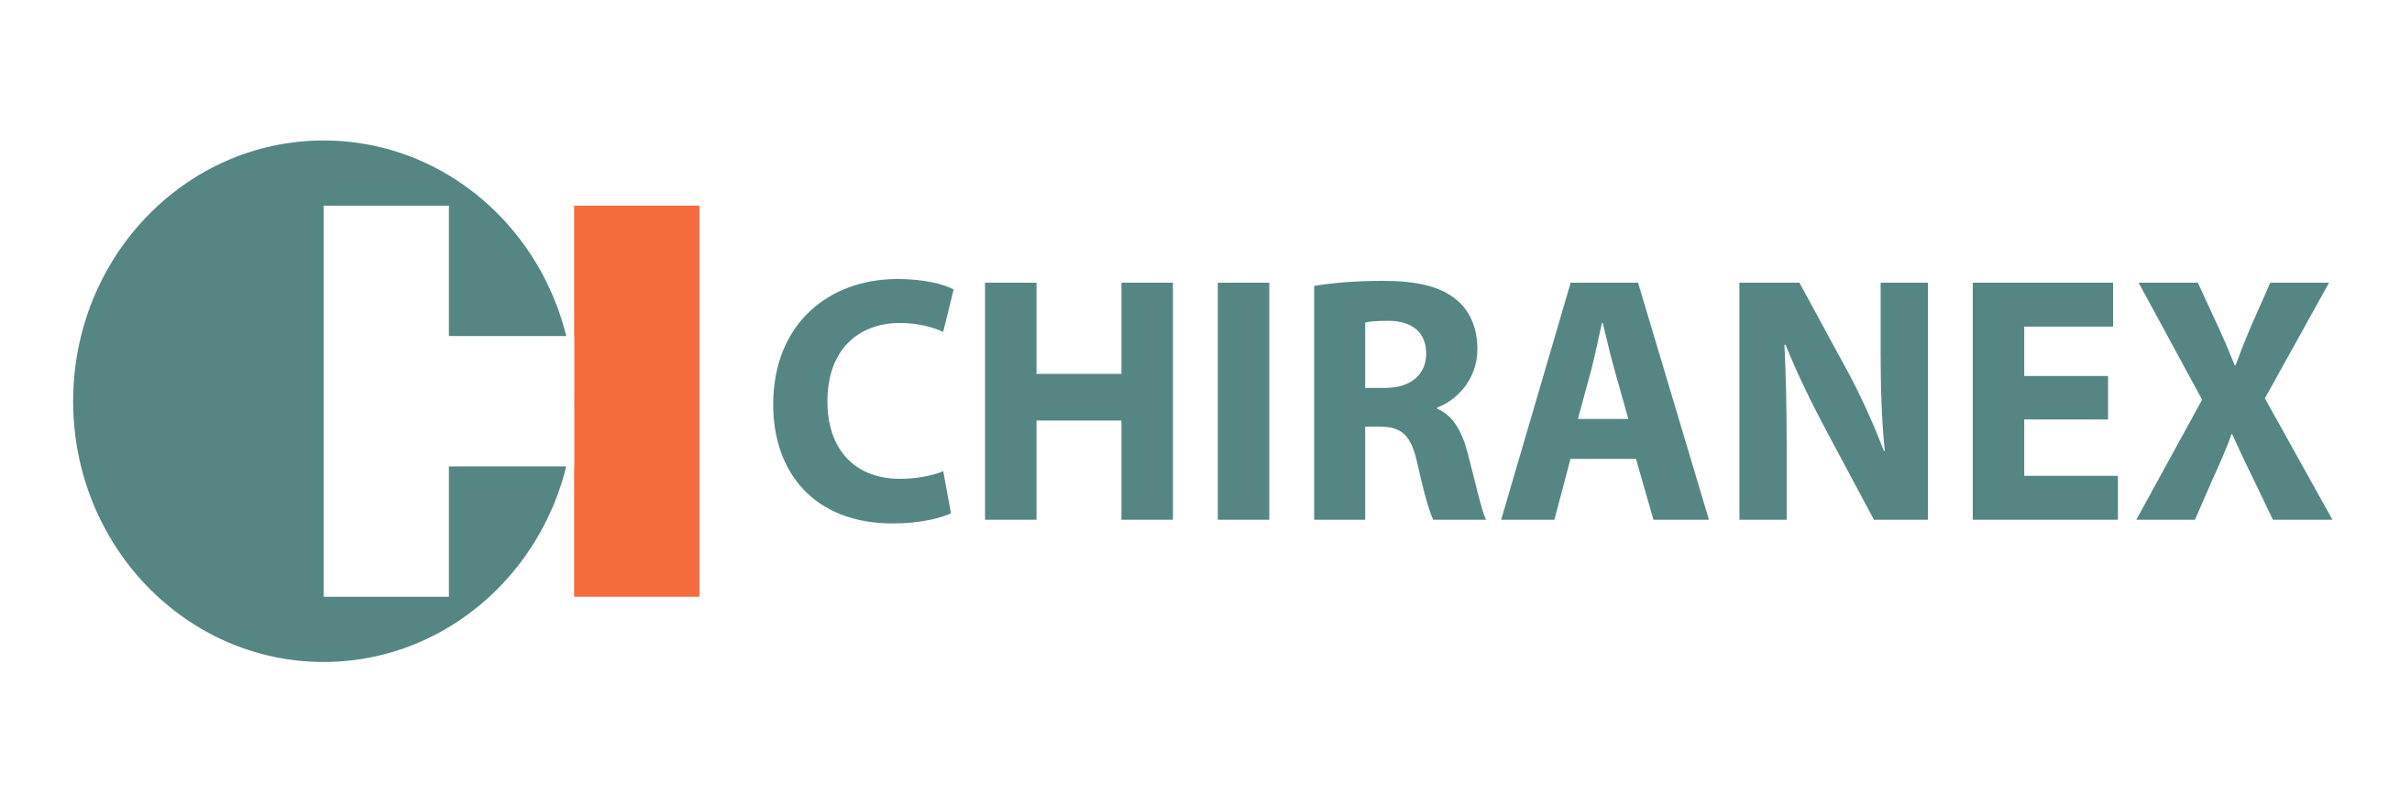 Chiranex.cz